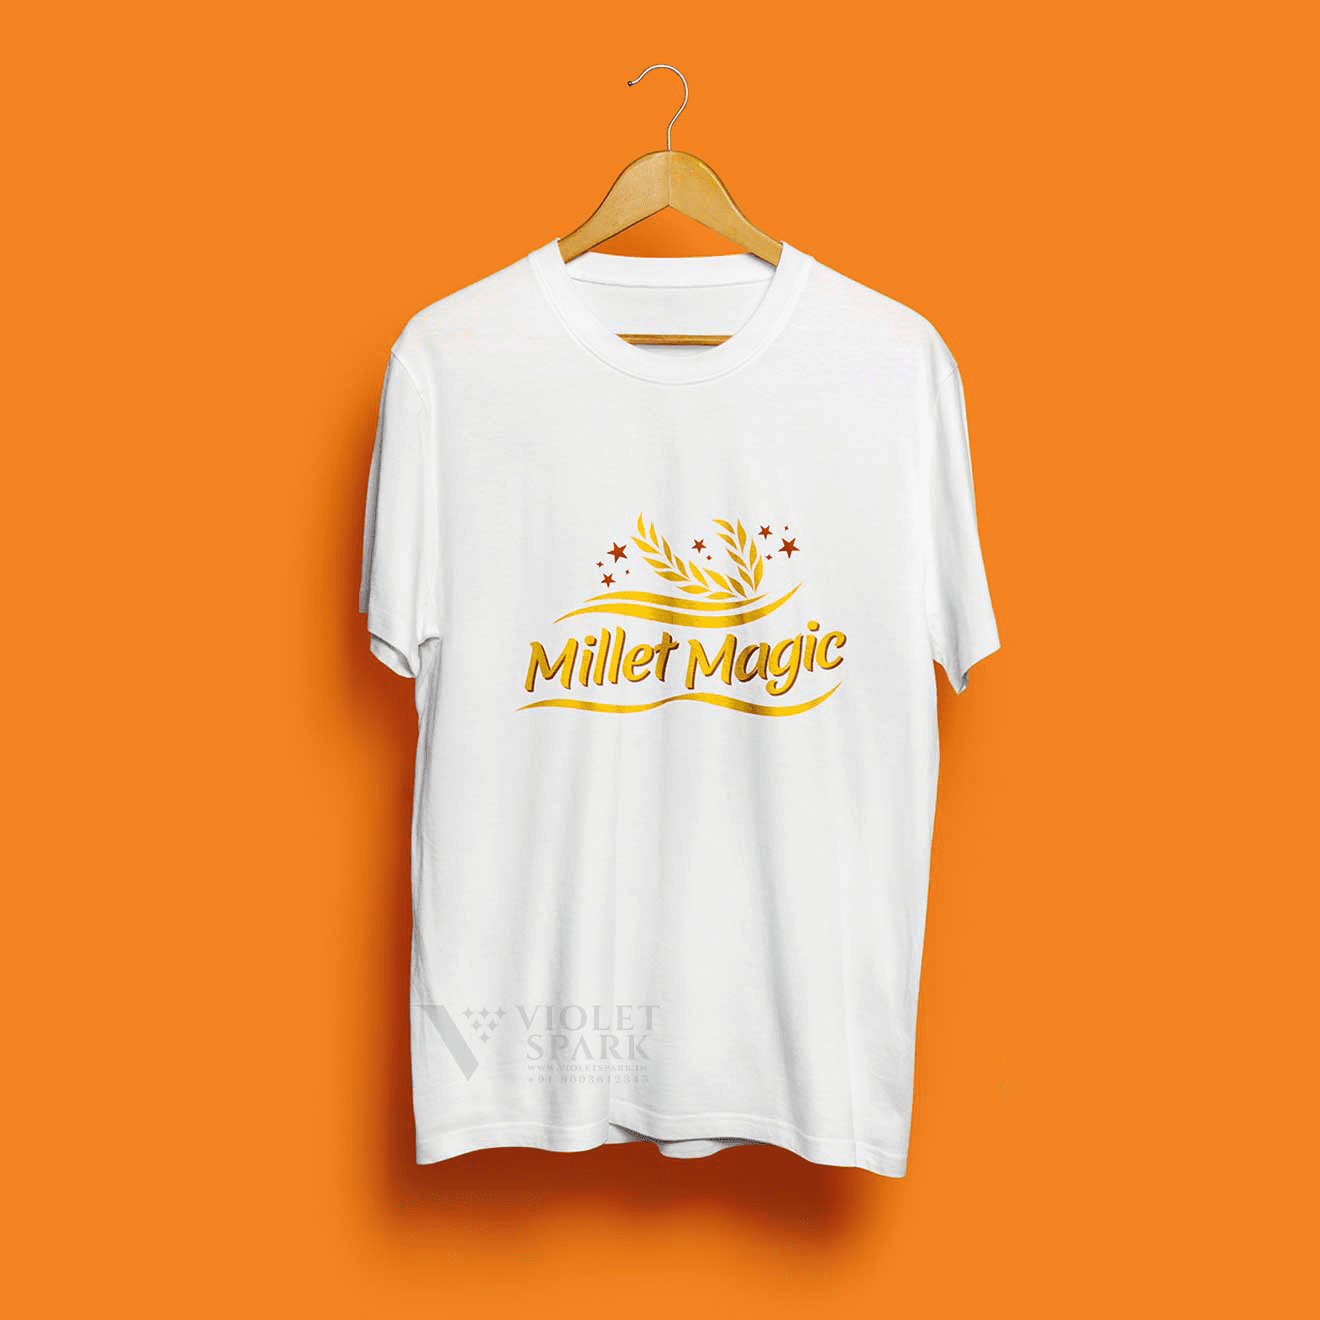 Millet Magic T-Shirt Front Branding Packaging Design Digital Marketing in Tiruppur by Violet Spark